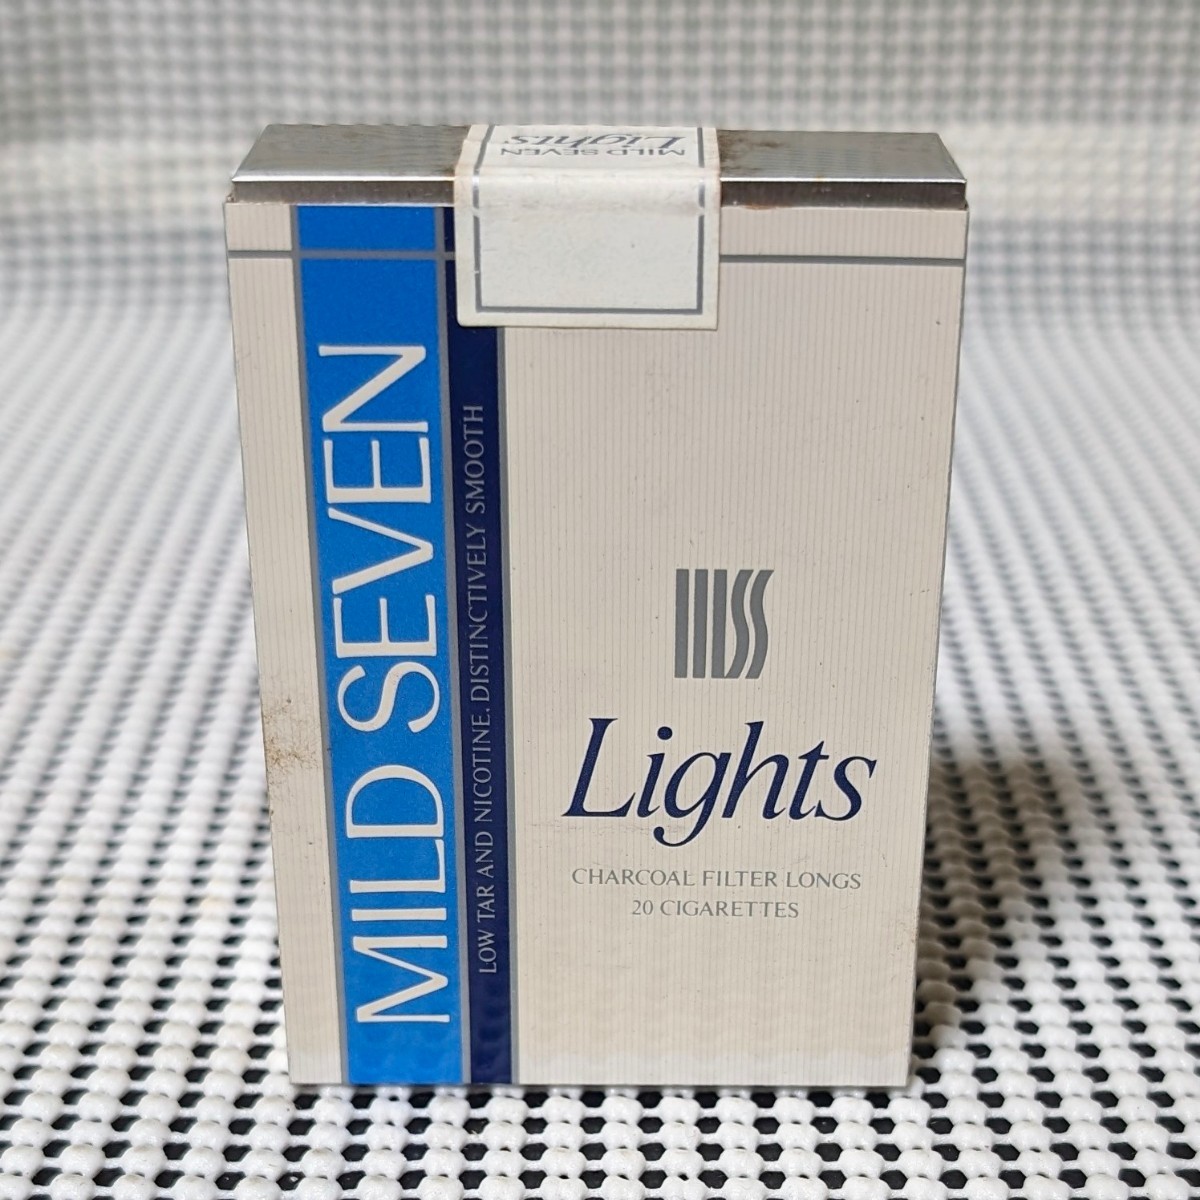 たばこ包装模型 自販機用模型 見本 たばこ タバコ MILD SEVEN Lights マイルドセブンライト 見本 ダミー サンプル モック 金属製_画像3